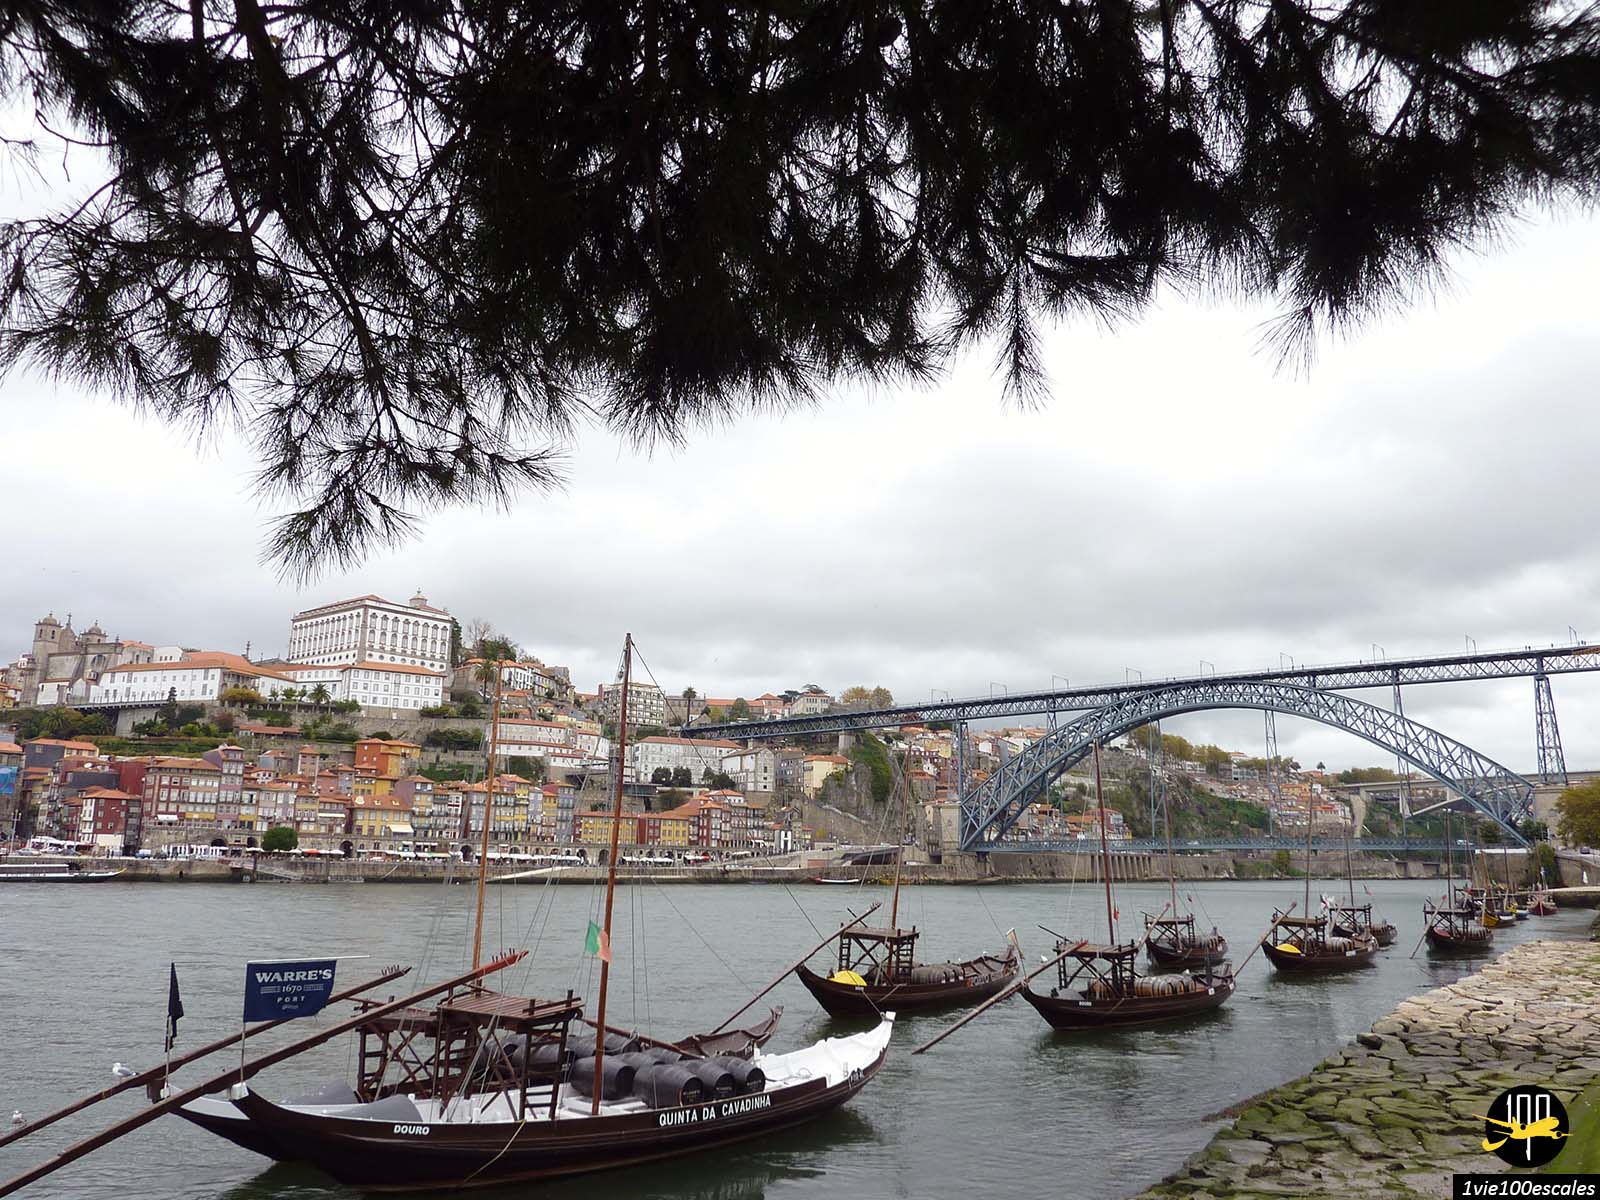 La découverte de ce superbe patrimoine se fera sur les rivages du fleuve Douro, au cœur de la belle Porto. A bord d'un petit bateau de croisière